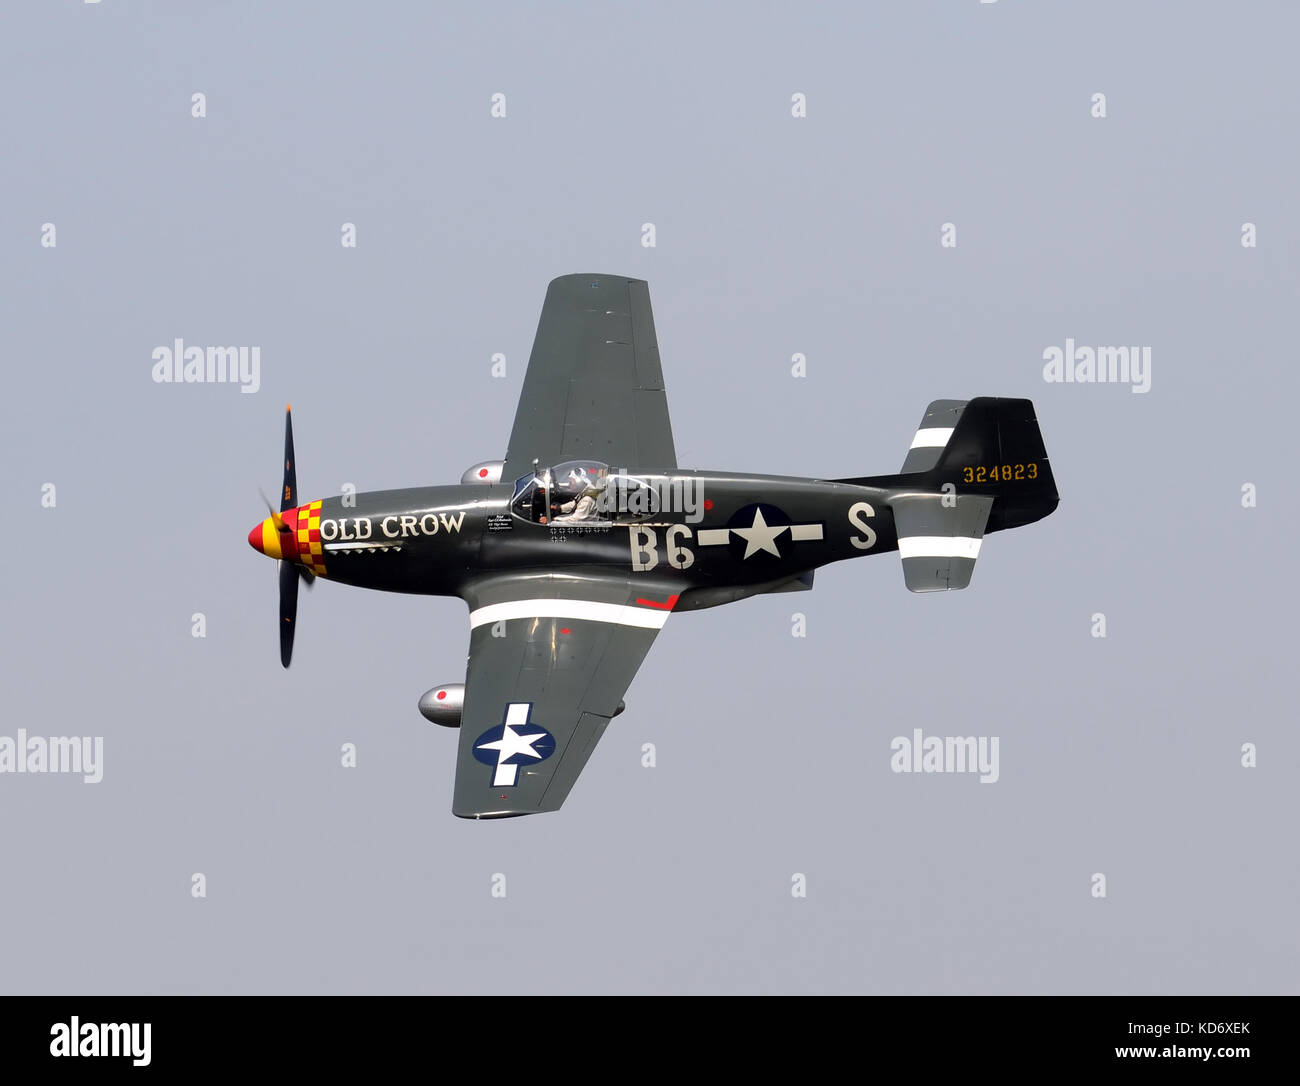 Ypsilanti, Michigan - augist 8, 2010: legendären Zweiten Weltkrieg Amerikanische Kampfjets P-51 Mustang. Dies ist eine seltene frühe Serie p-51 b Version namens 'Old Crow' Stockfoto